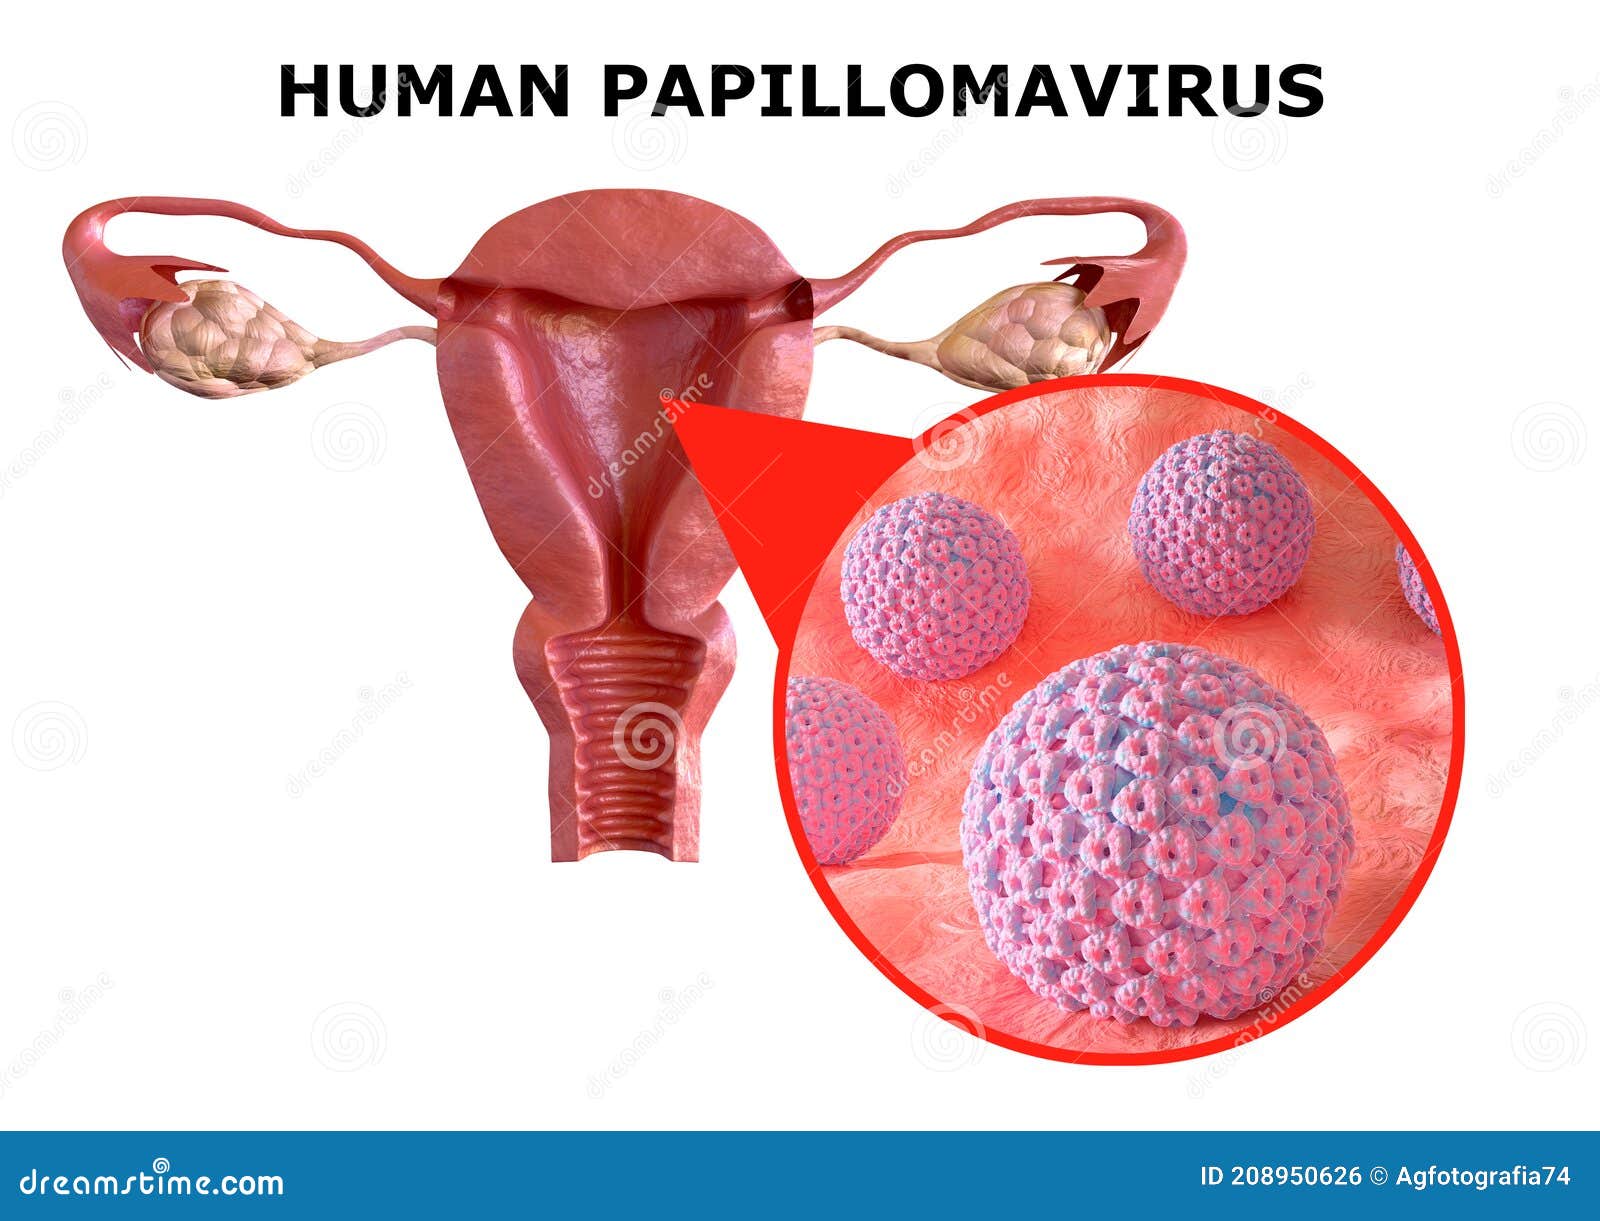 human papillomavirus genital